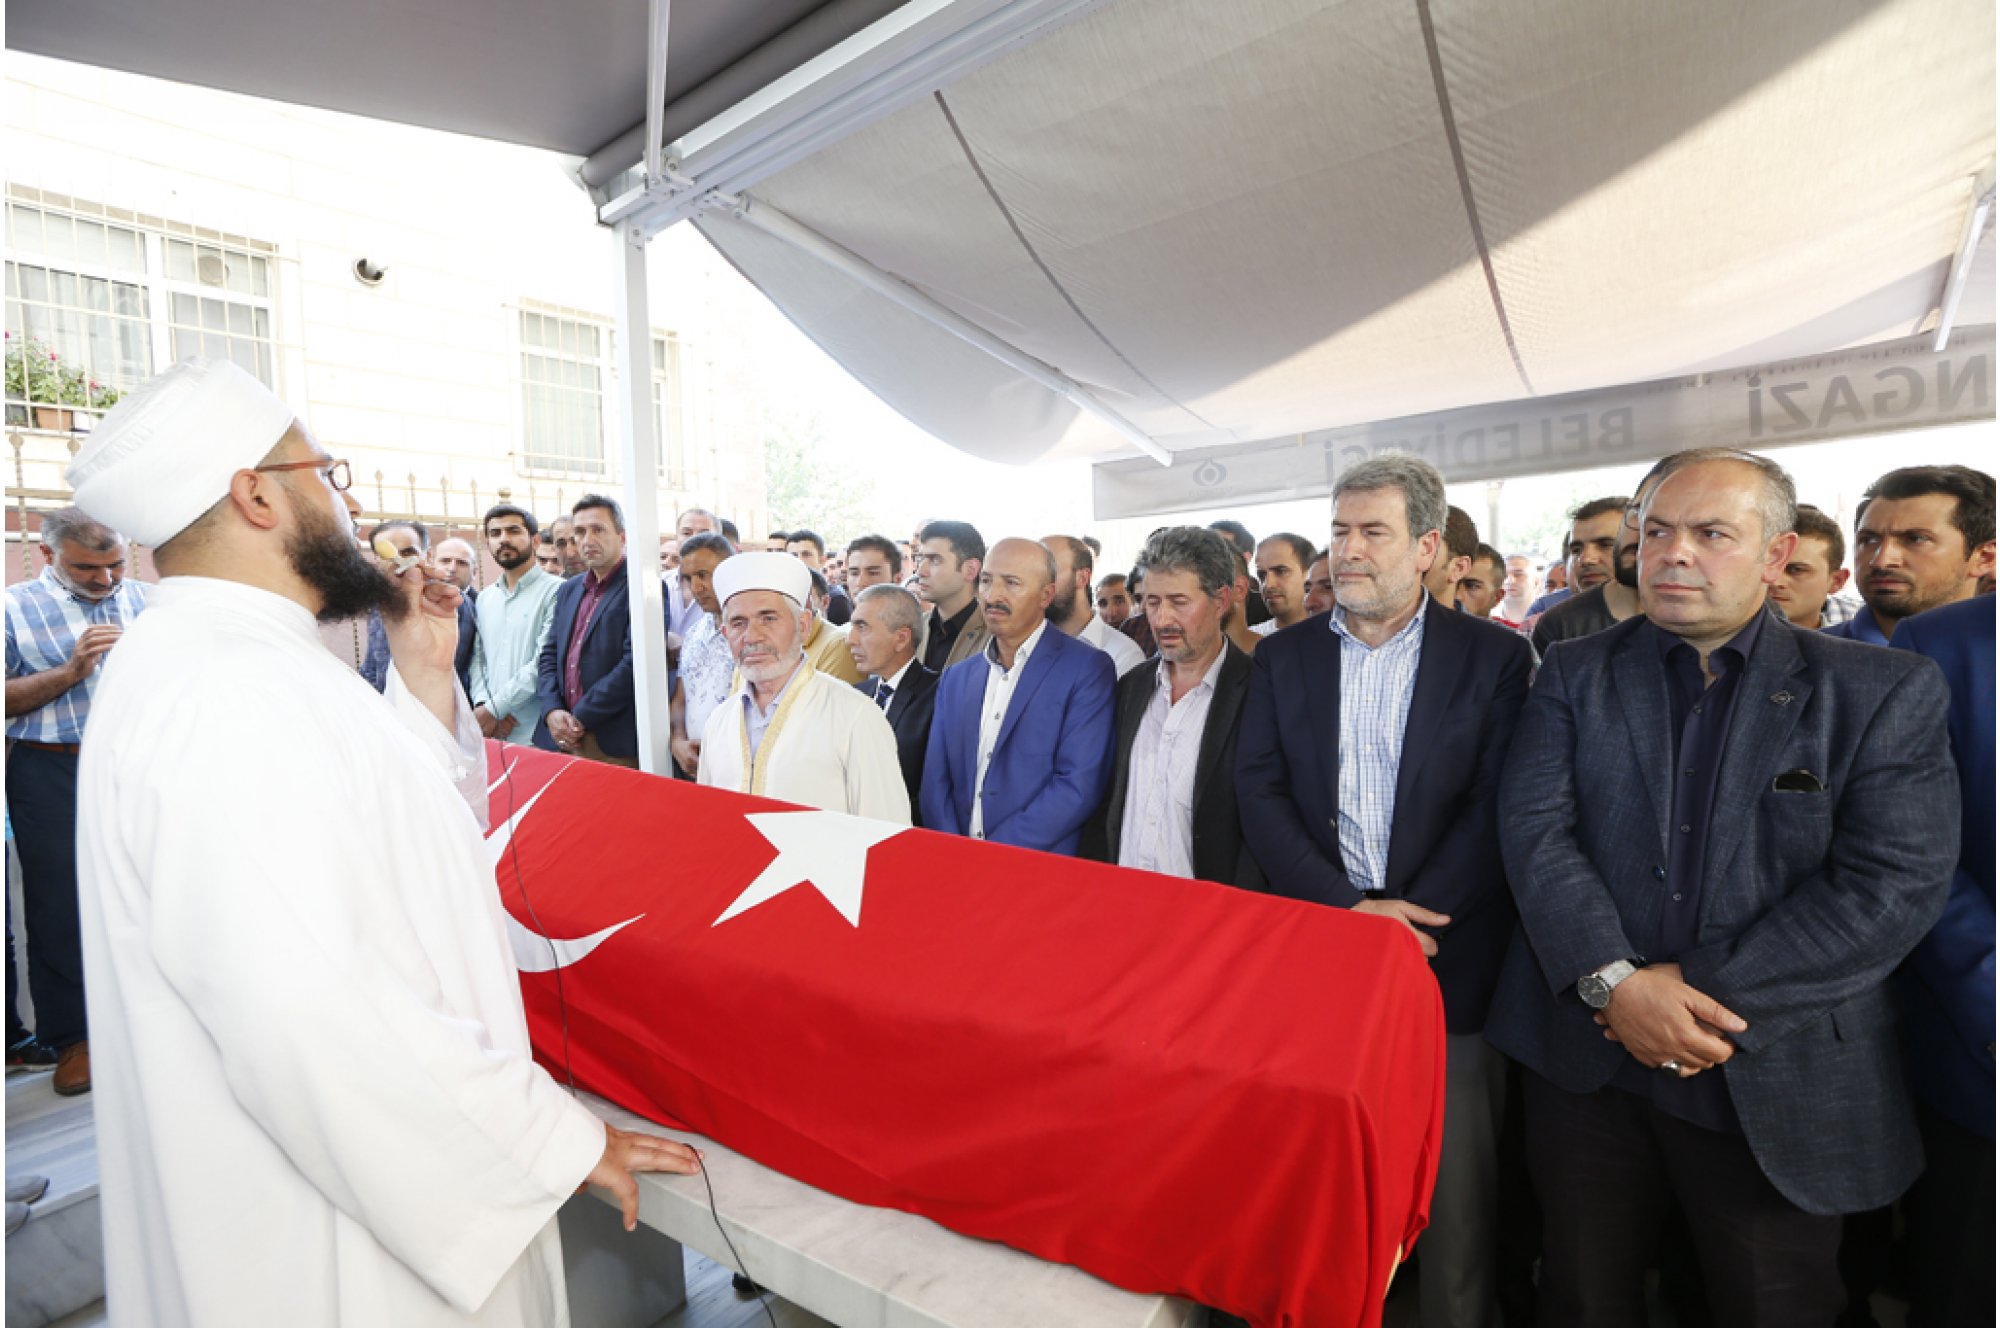 كان من بين المشاركين في صلاة الجنازة نائب مدينة إسطنبول خالص دالكيليج، ورئيس بلدية سلطان غازي جاهد ألتوناي إلى جانب أسرة الشهيد مع عدد كبير من المواطنين.